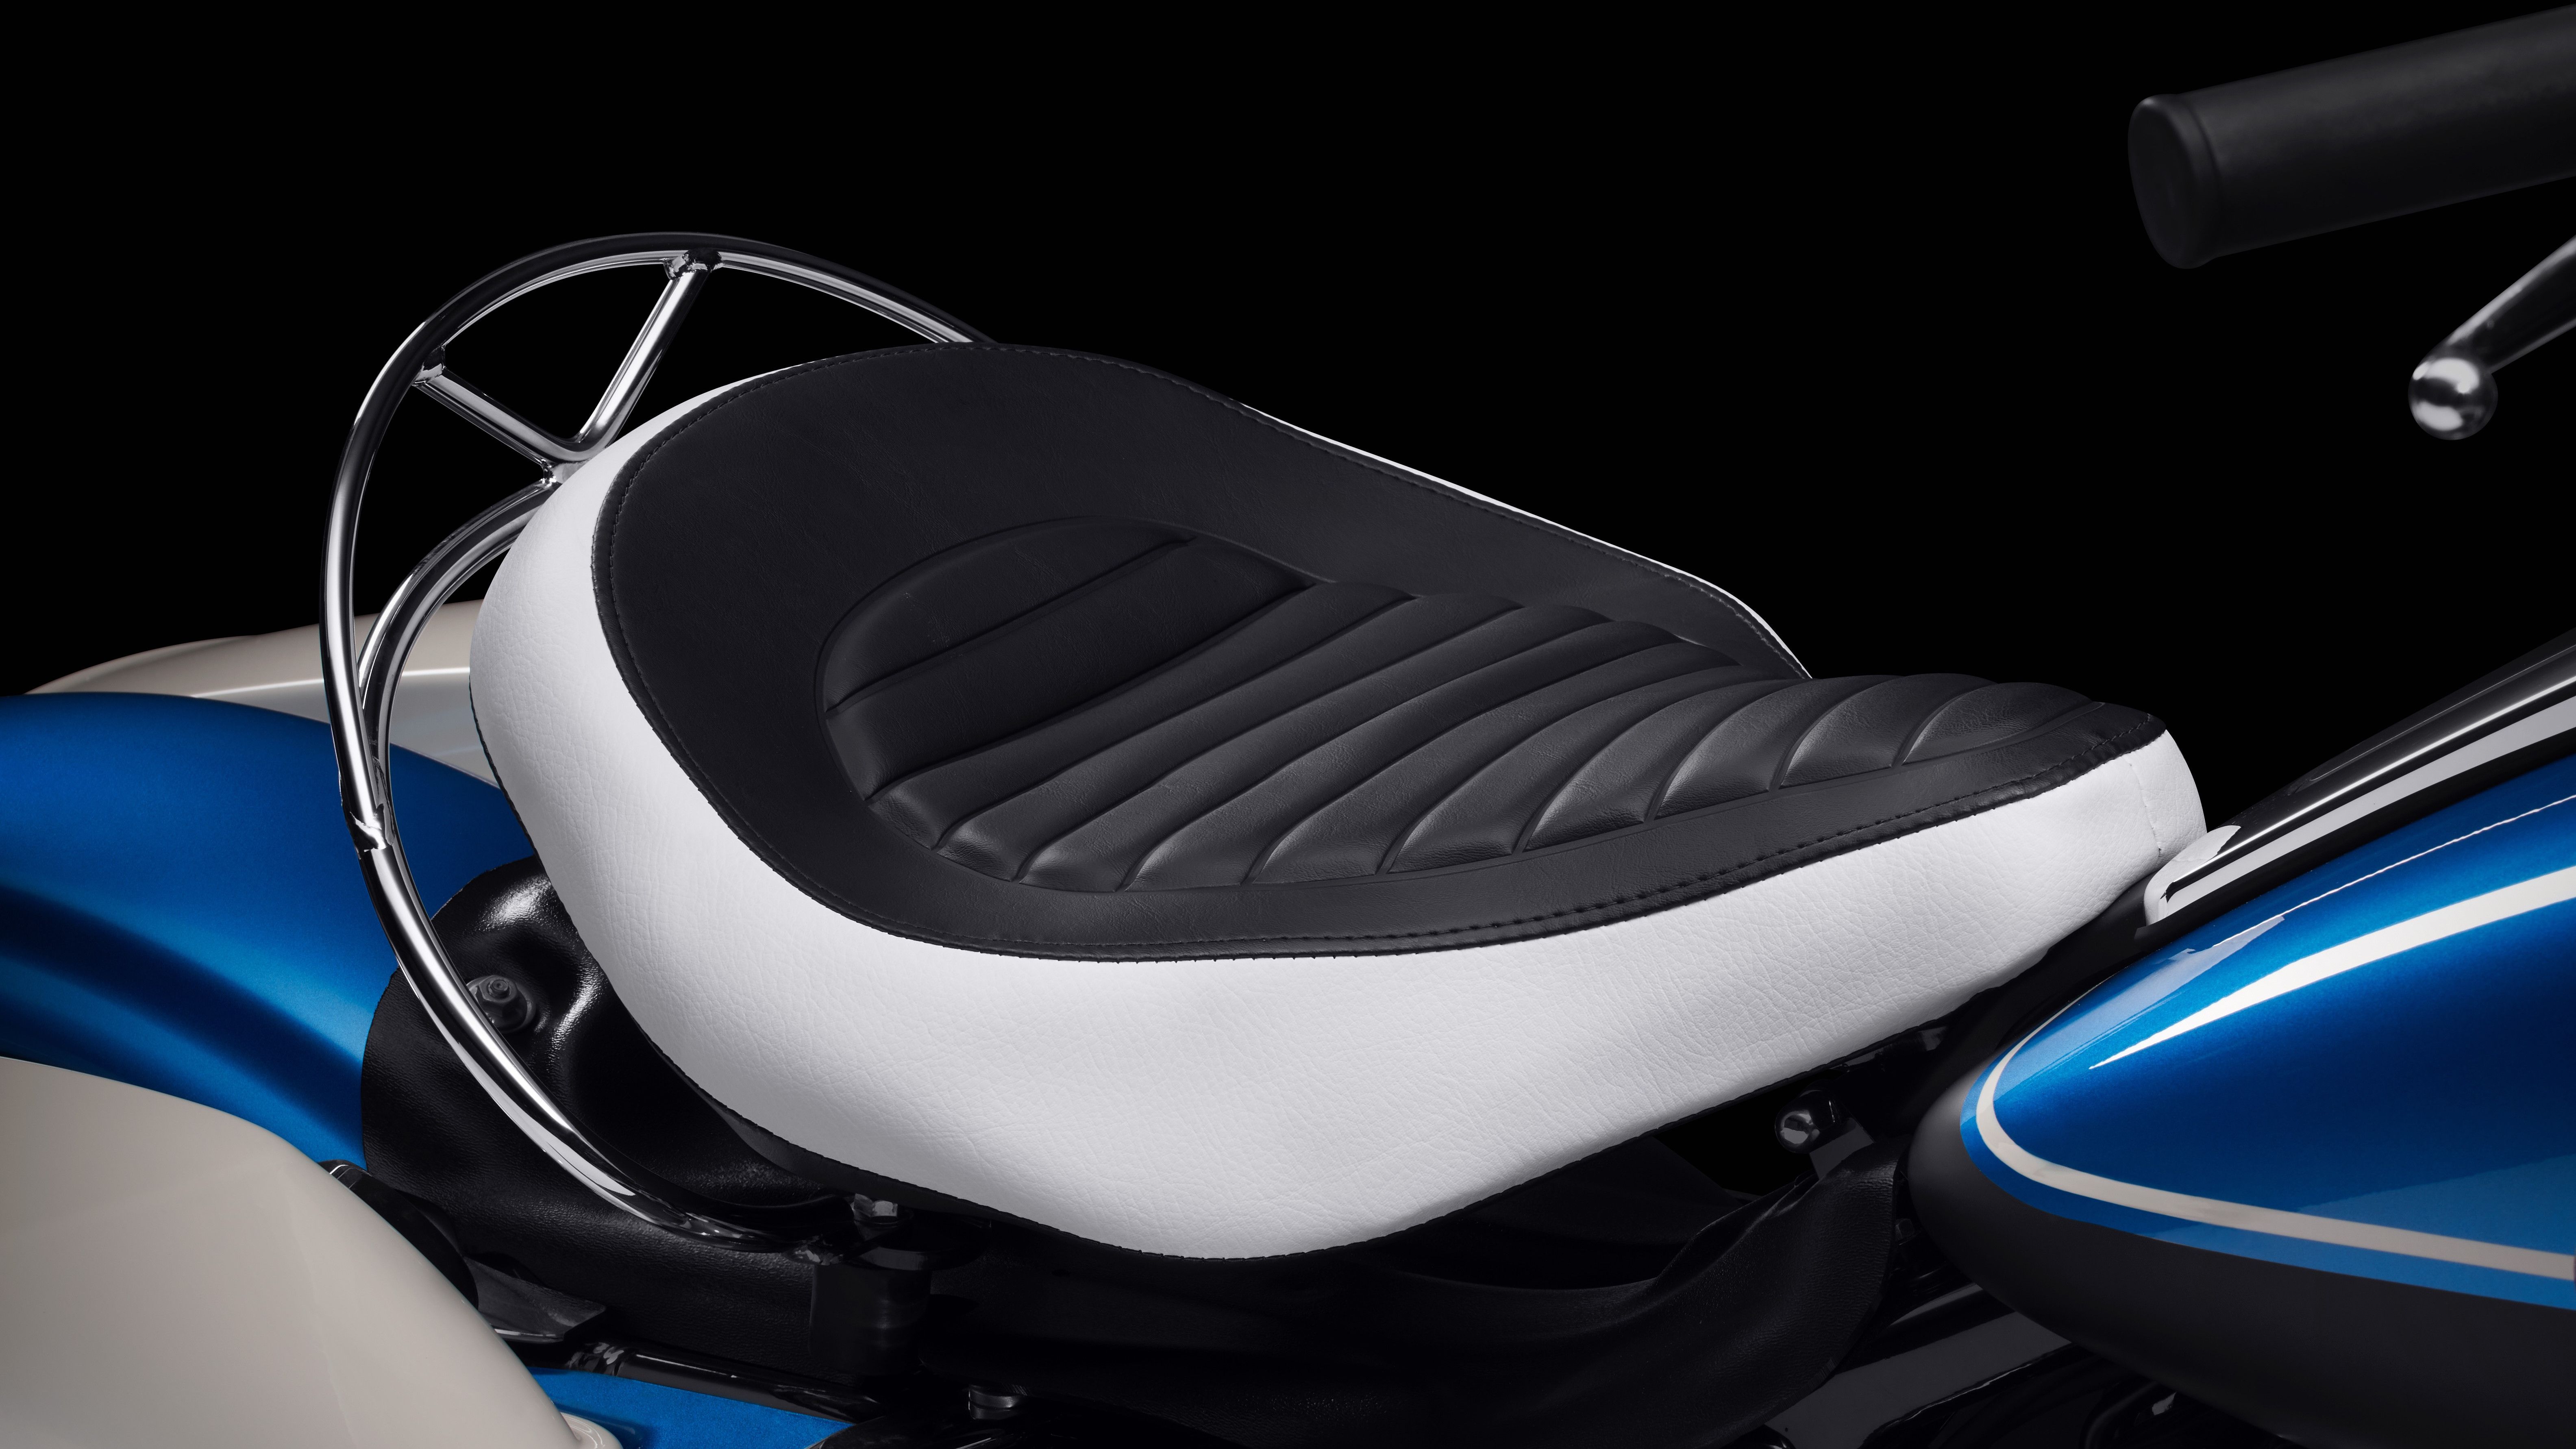 2021 Harley-Davidson Electra Glide Revival